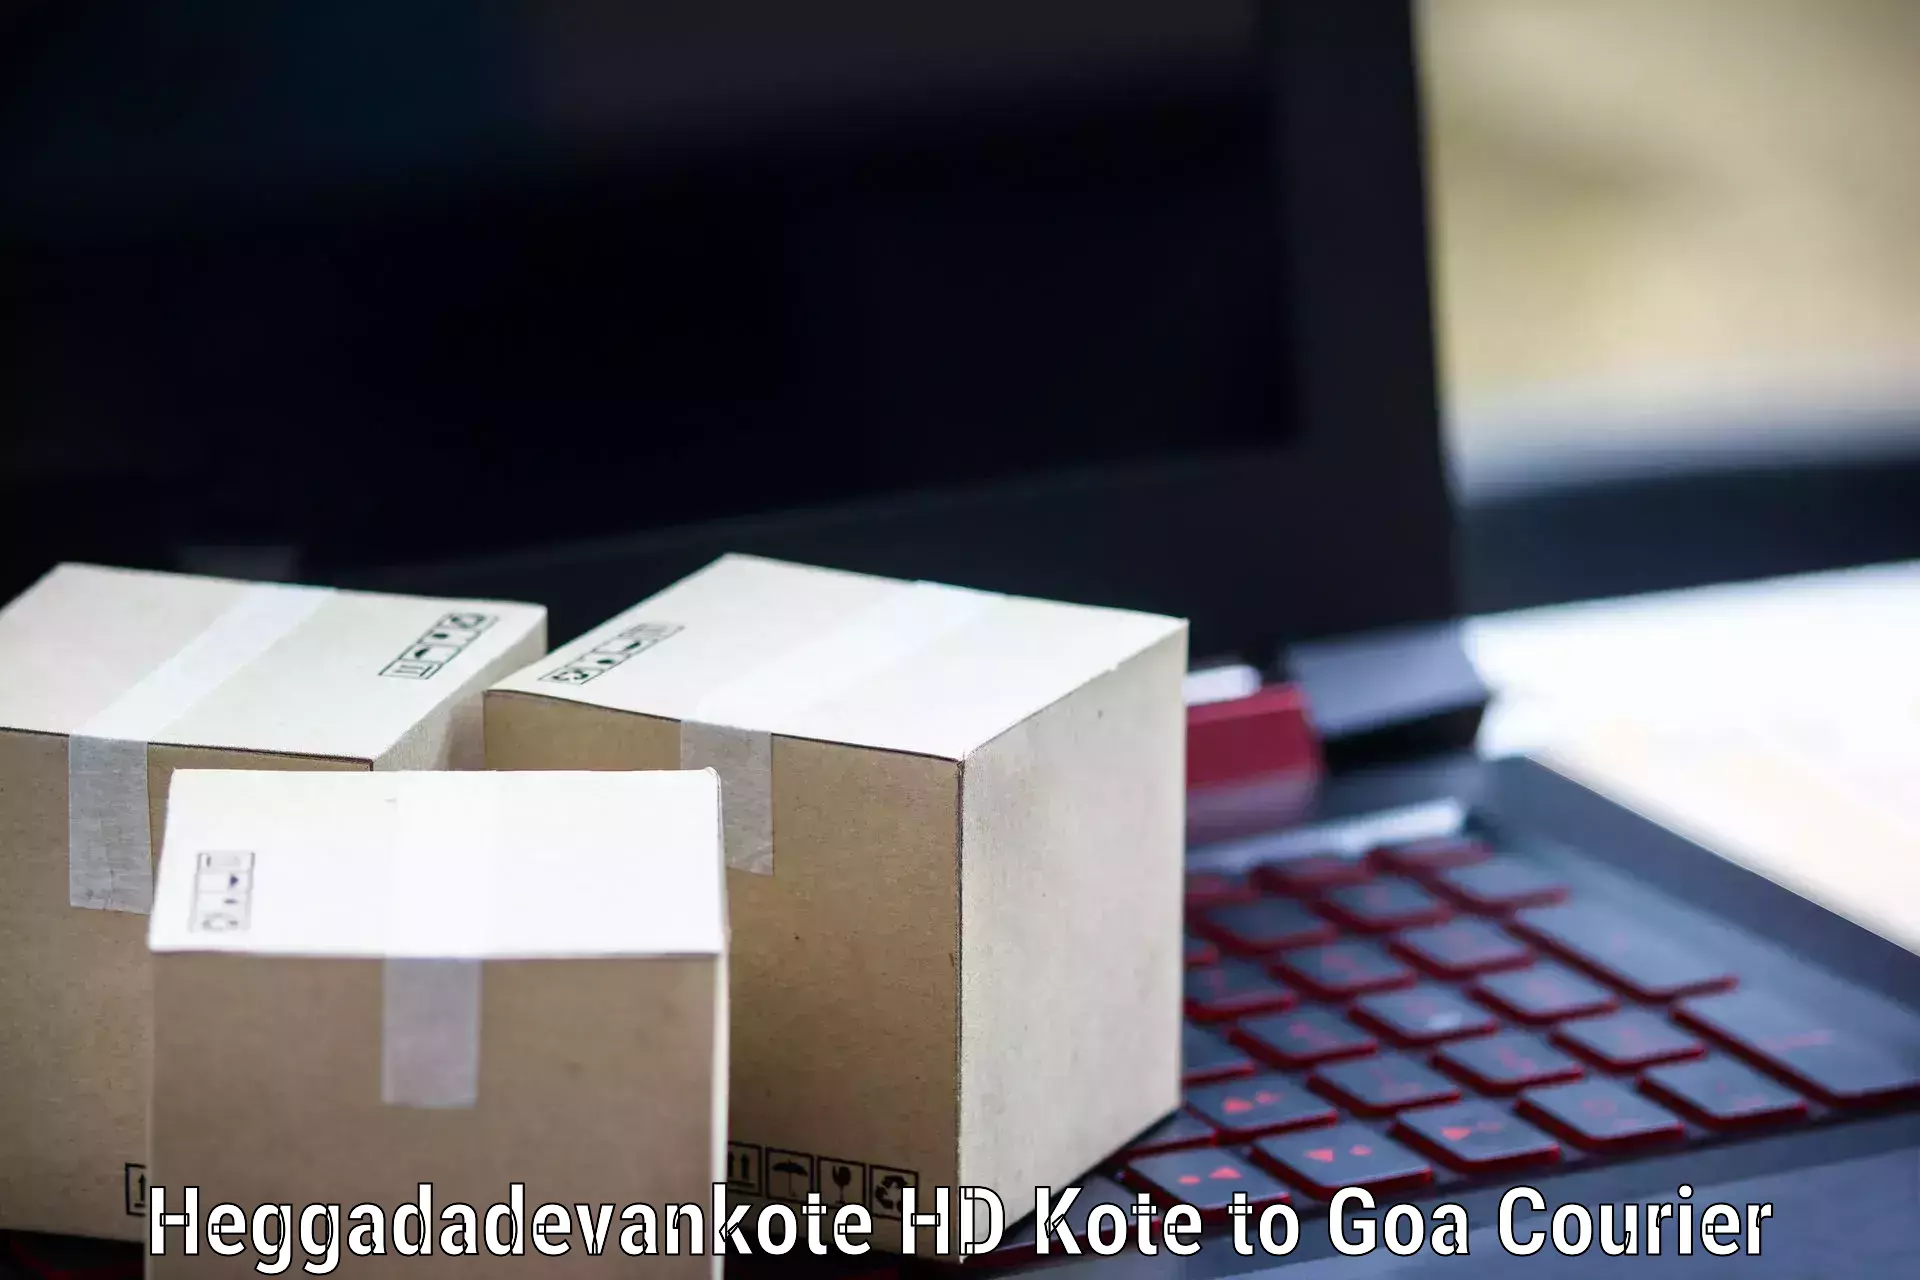 Speedy delivery service Heggadadevankote HD Kote to Panjim